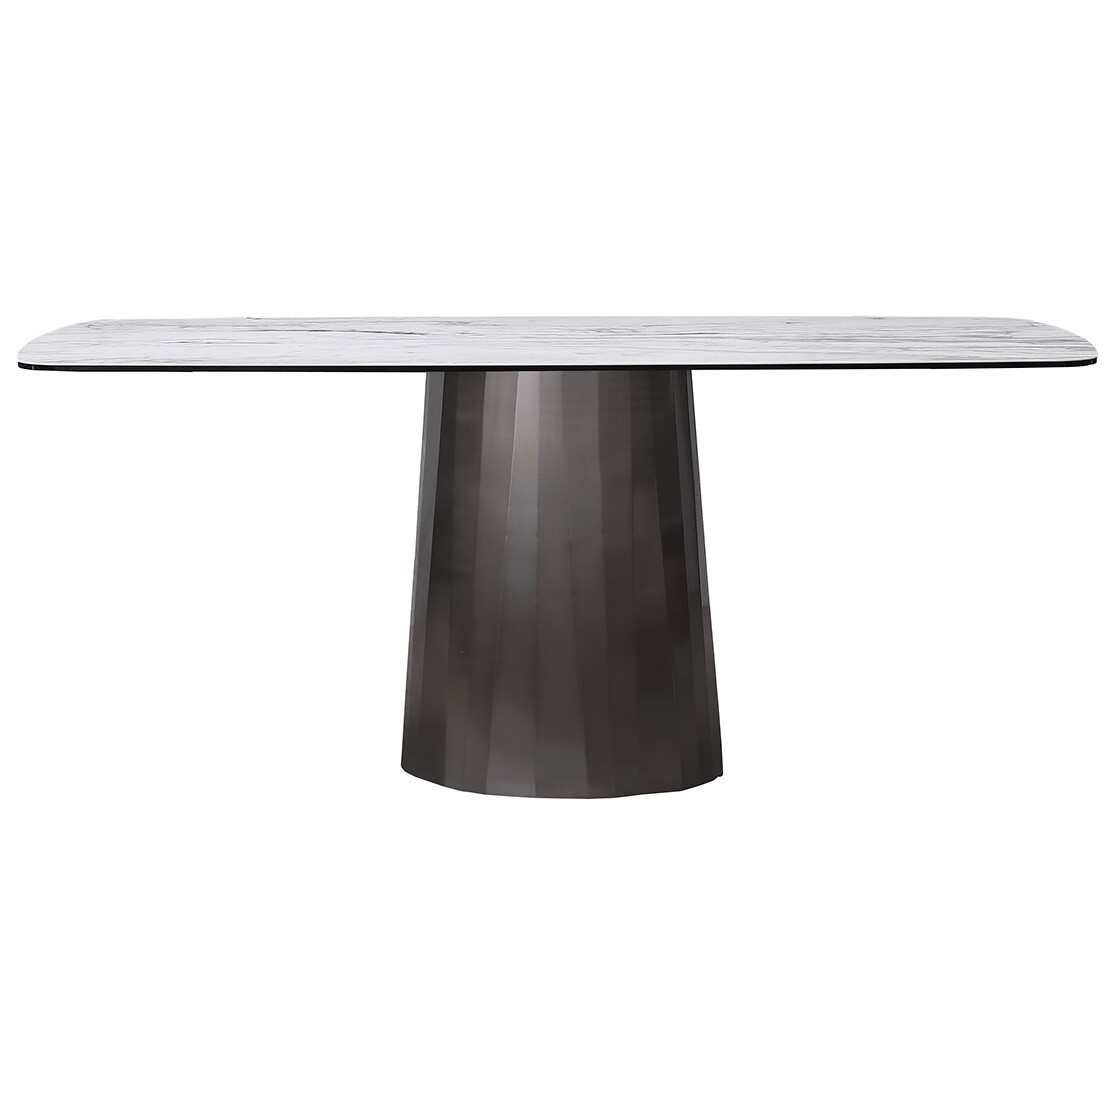 Обеденный стол прямоугольный с керамической столешницей 100х240 см серый, черный 57EL-91600